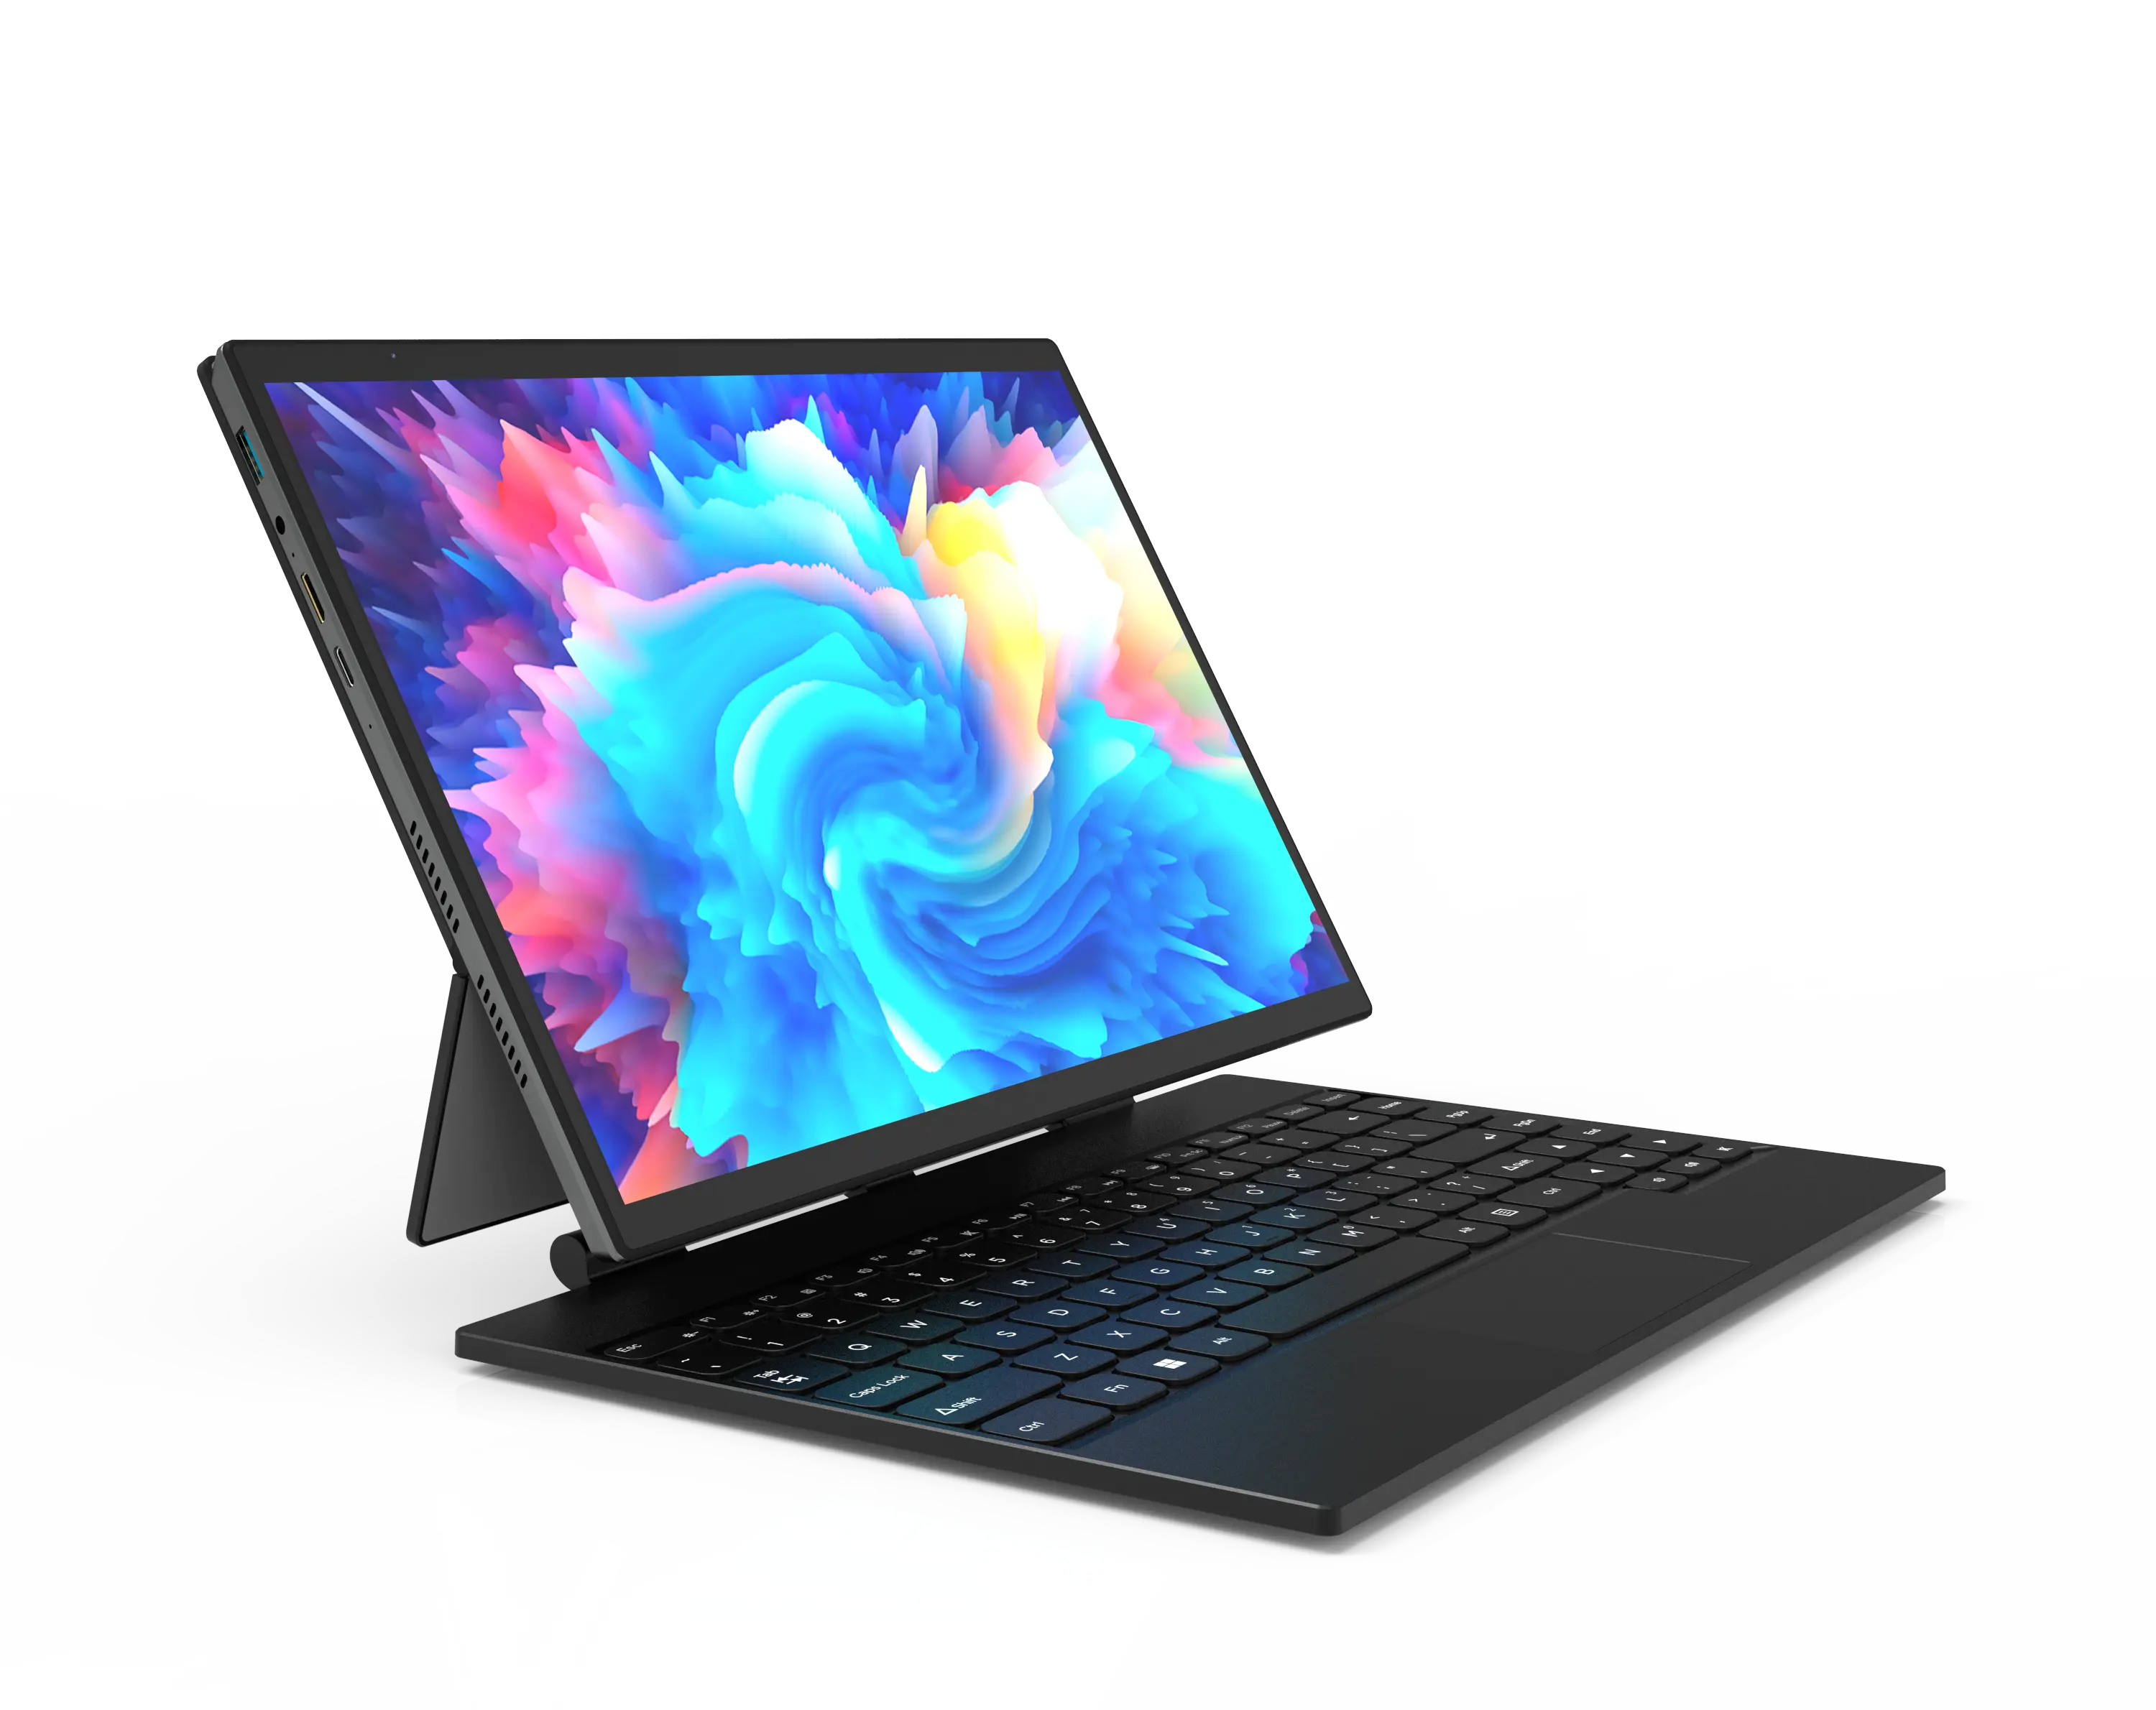 Venta al por mayor caliente 14 pulgadas Yoga pantalla táctil Win 10 Notebook N5105 Quad Core 16Gb 512Gb Ssd 2 en 1 Tablet ordenador portátil con Stylus